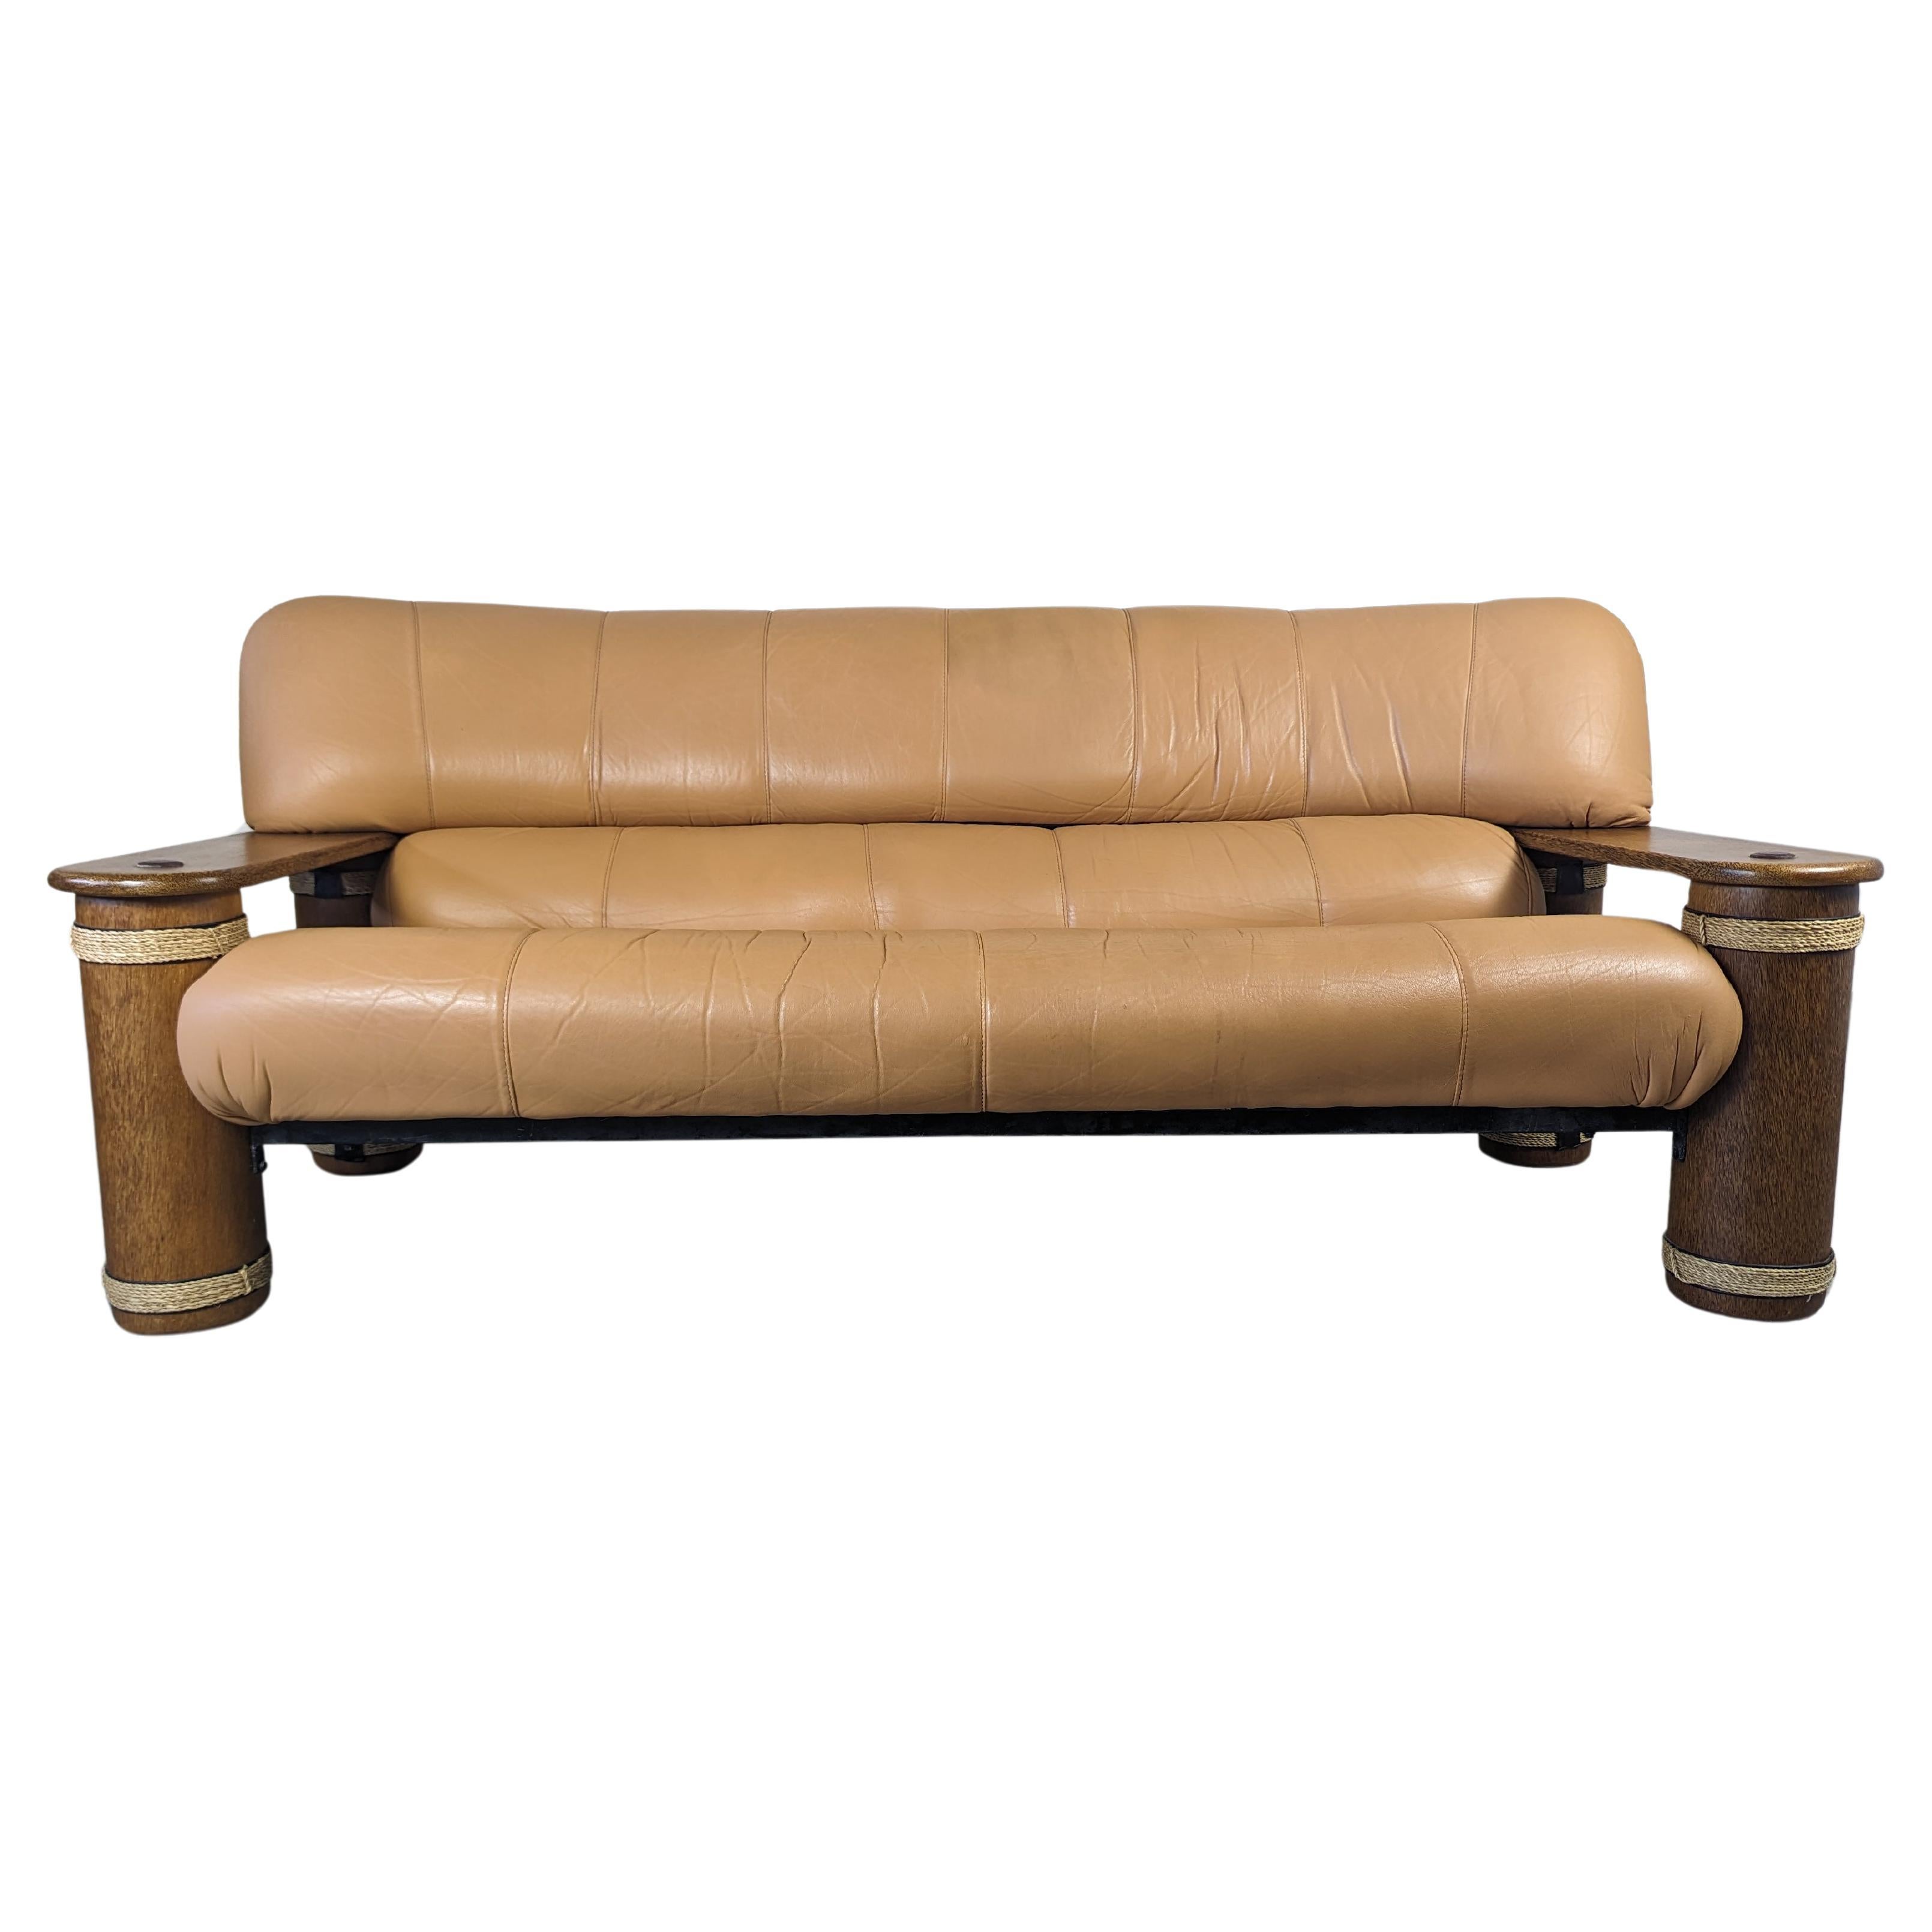 Dreisitziges Vintage-Sofa aus Leder und Palmholz von Pacific Green, um 1990